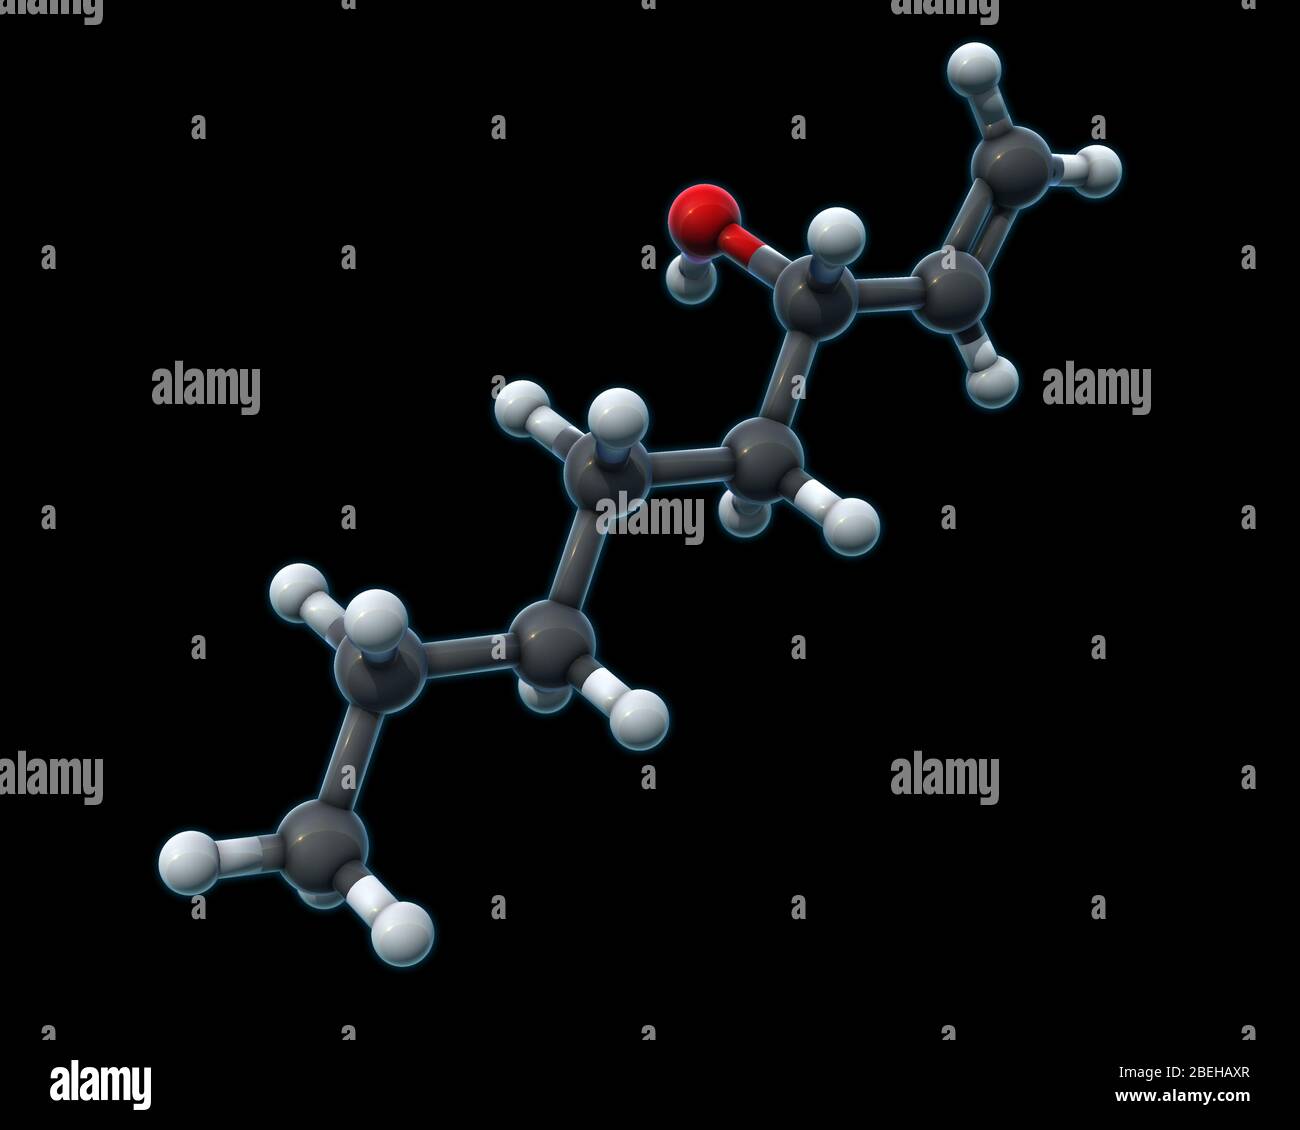 Ein molekulares 3D-Modell von Octenol, auch bekannt als 1-Octen-3-ol oder "Raumialkohol". Octenol ist eine Chemikalie, die in menschlichen Atem und Schweiß, Pflanzen und Fugi gefunden wird, die beißende Insekten wie Mücken anzieht. Octenol entsteht beim Abbau von Linolsäure. Atome sind dunkelgrau (Kohlenstoff), hellgrau (Wasserstoff) und rot (Sauerstoff) gefärbt. Stockfoto